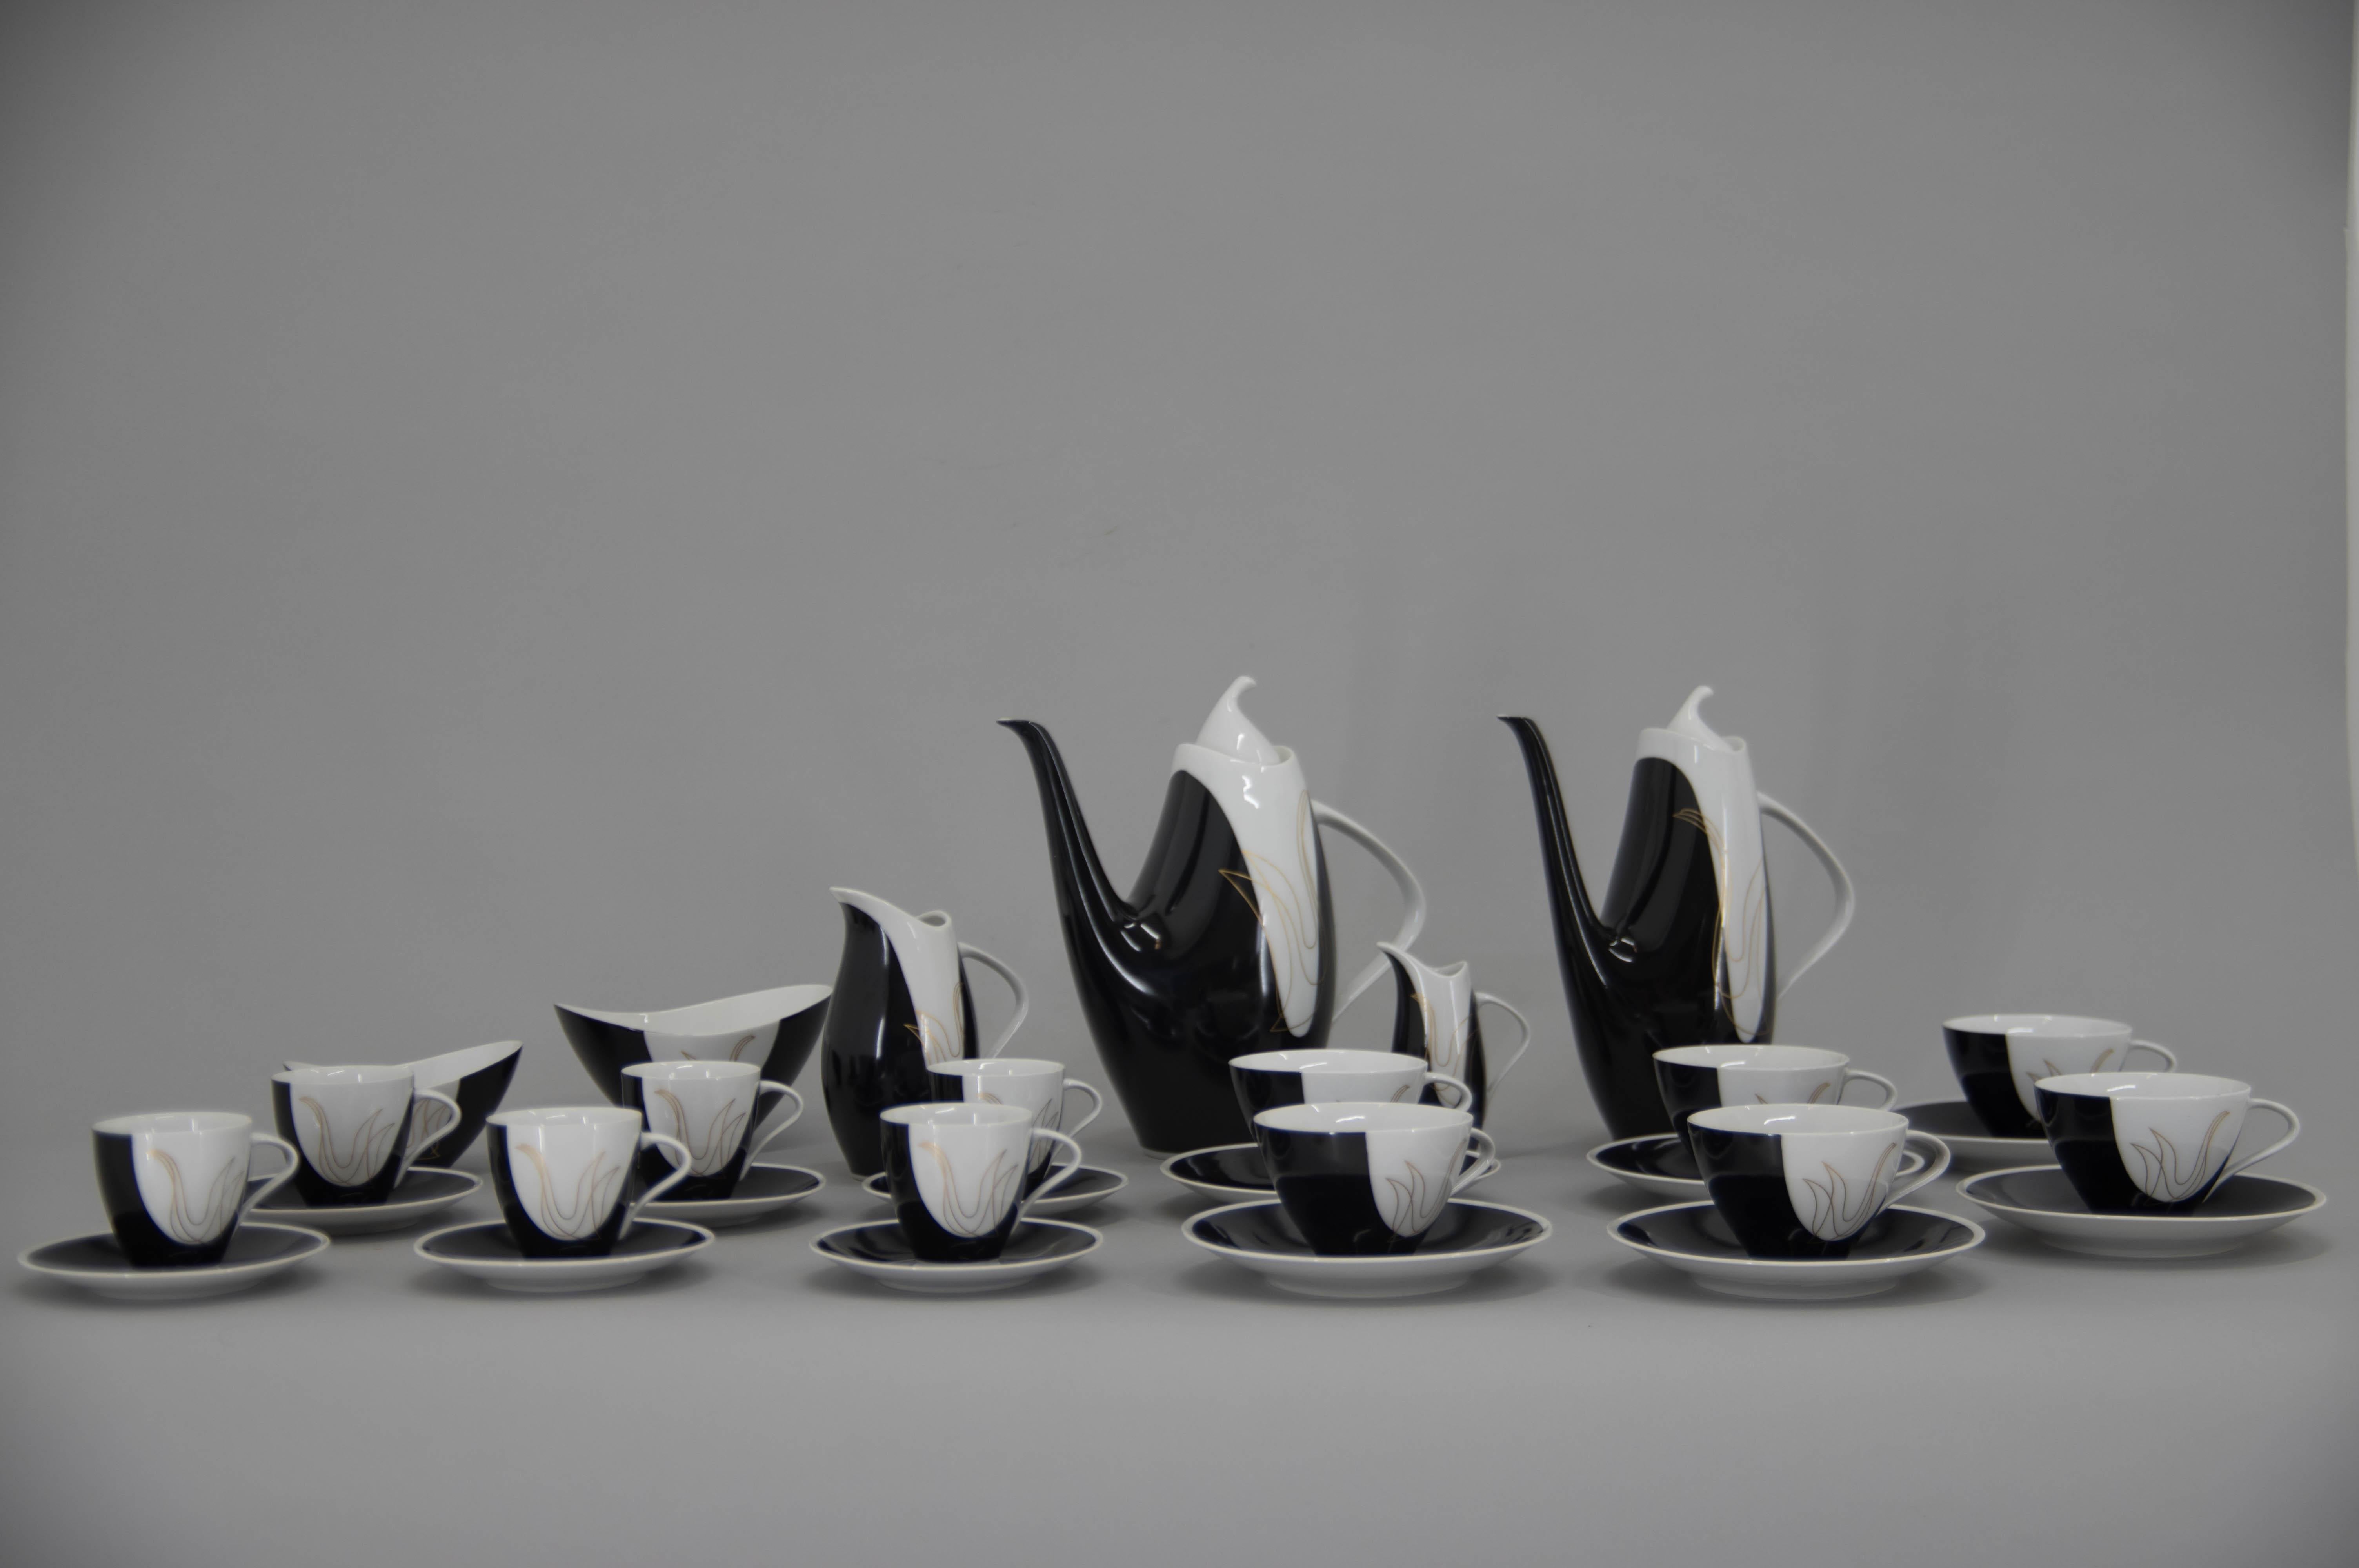 Kaffee- und Teeservice Elka, entworfen von Jaroslav Jezek im Jahr 1957
Ausgezeichnet mit dem Grand Prix auf der Expo 1958
Hergestellt und gekennzeichnet von Brezova - Pirkenhammer
6 Teetassen mit Teller
6 Kaffeetassen mit Teller
1 Teekanne
1